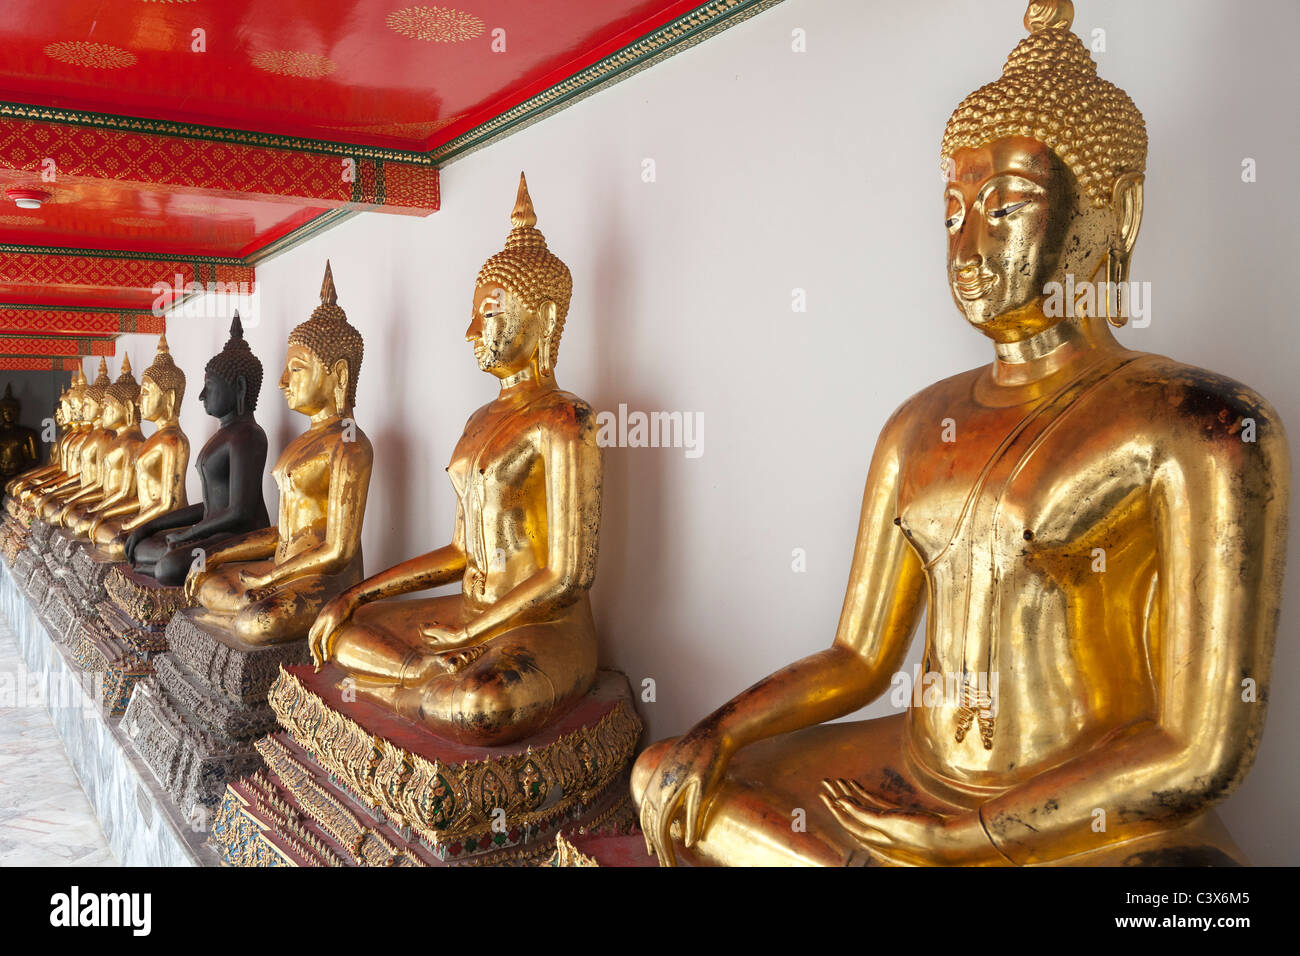 Temple de Wat Pho, Bangkok - rangée de bouddhas assis 8 Banque D'Images